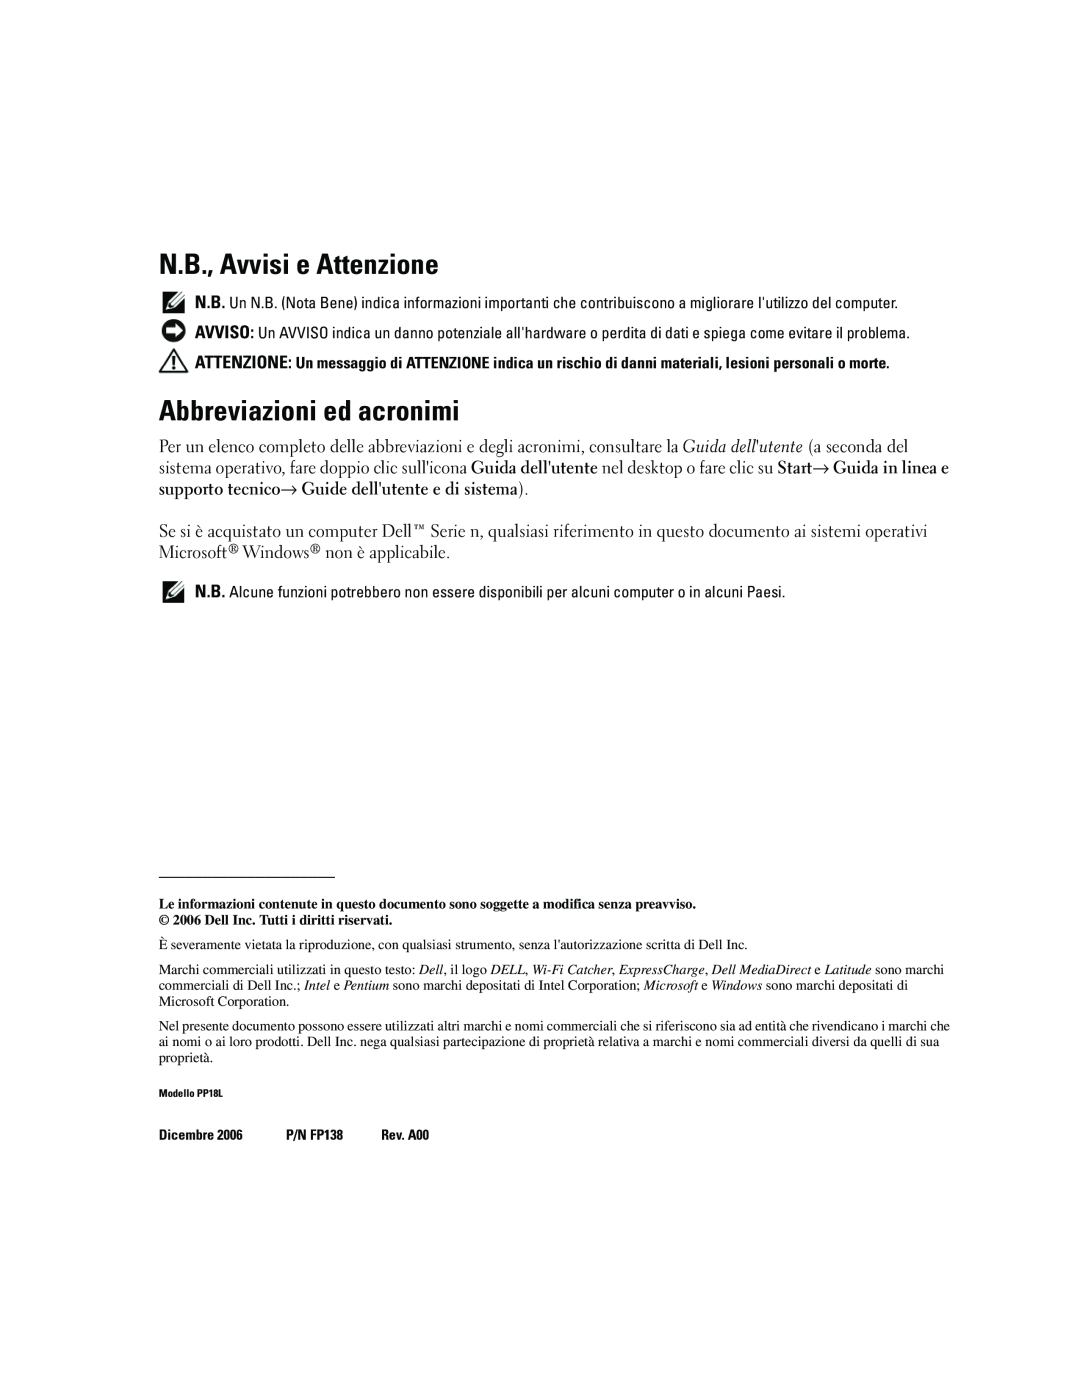 Dell ATG D620 manual N.B., Avvisi e Attenzione, Abbreviazioni ed acronimi 